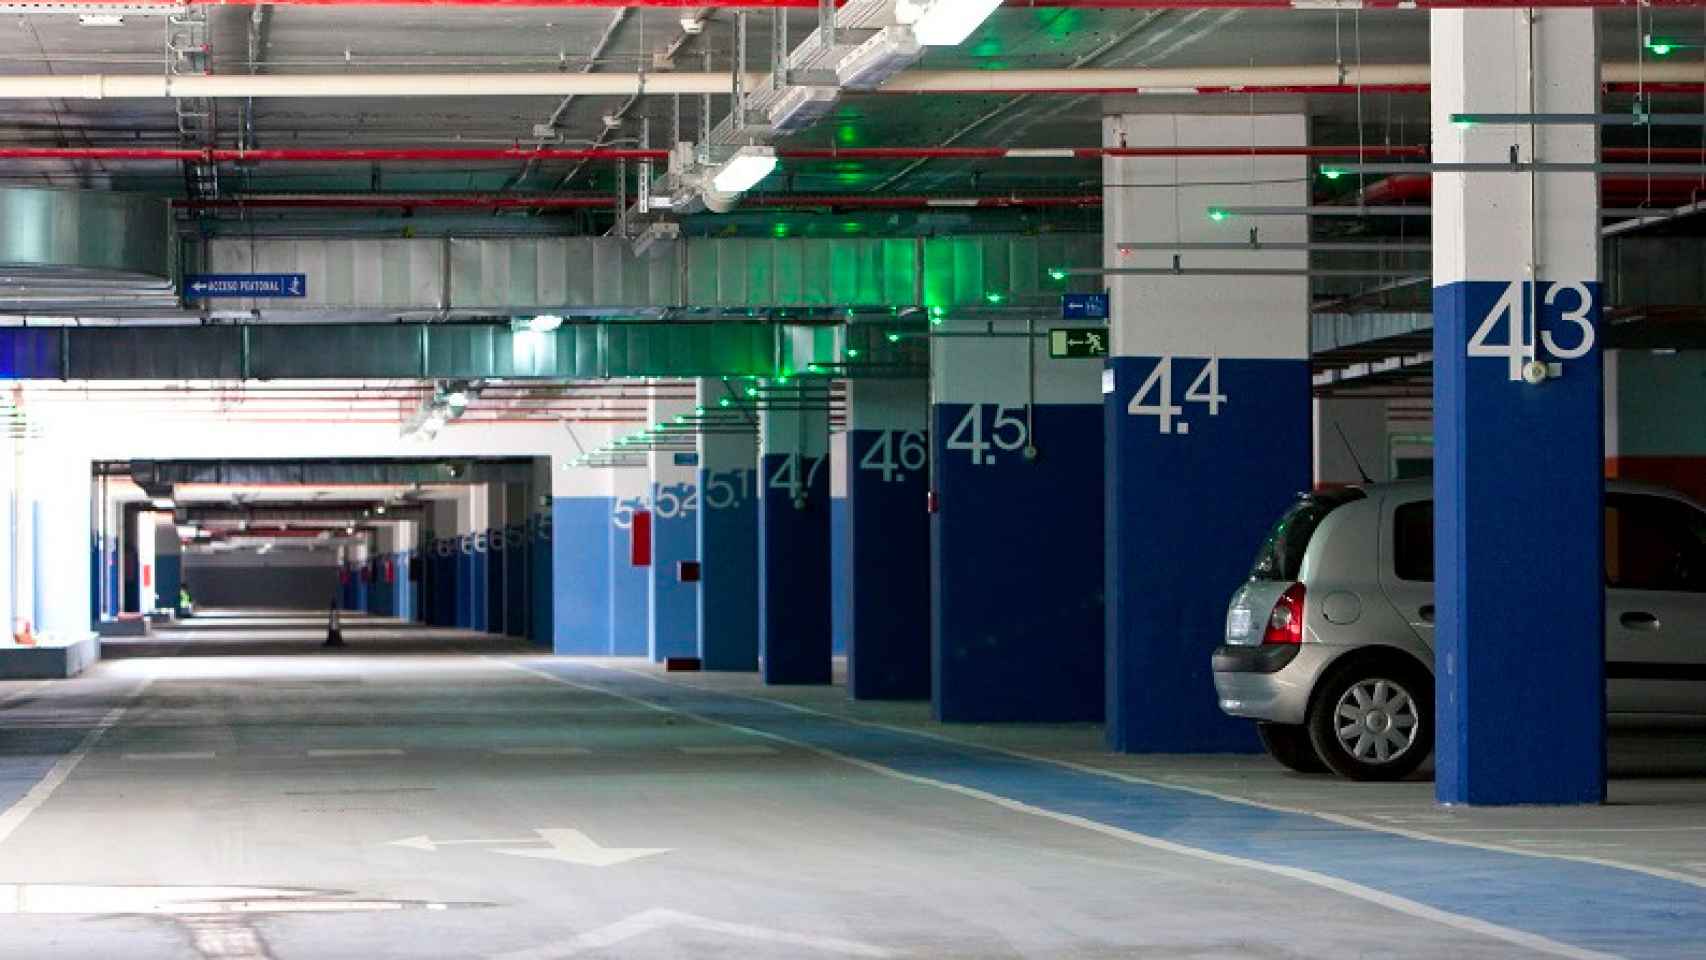 Los edificios de viviendas tendrán menos plazas de aparcamiento.